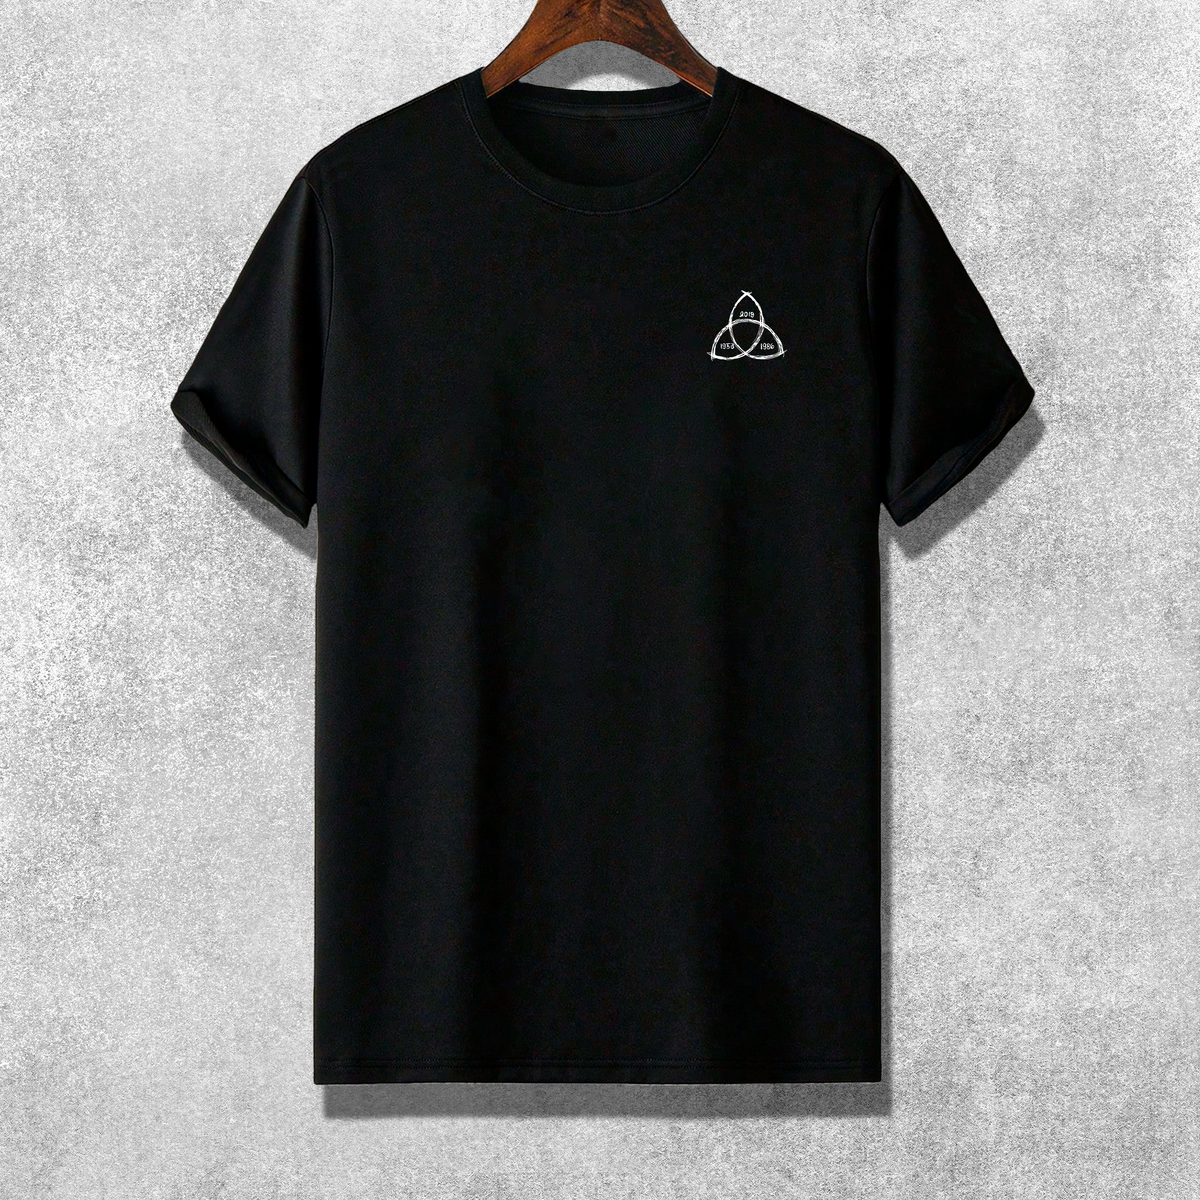 Nome do produto: Camiseta - Dark